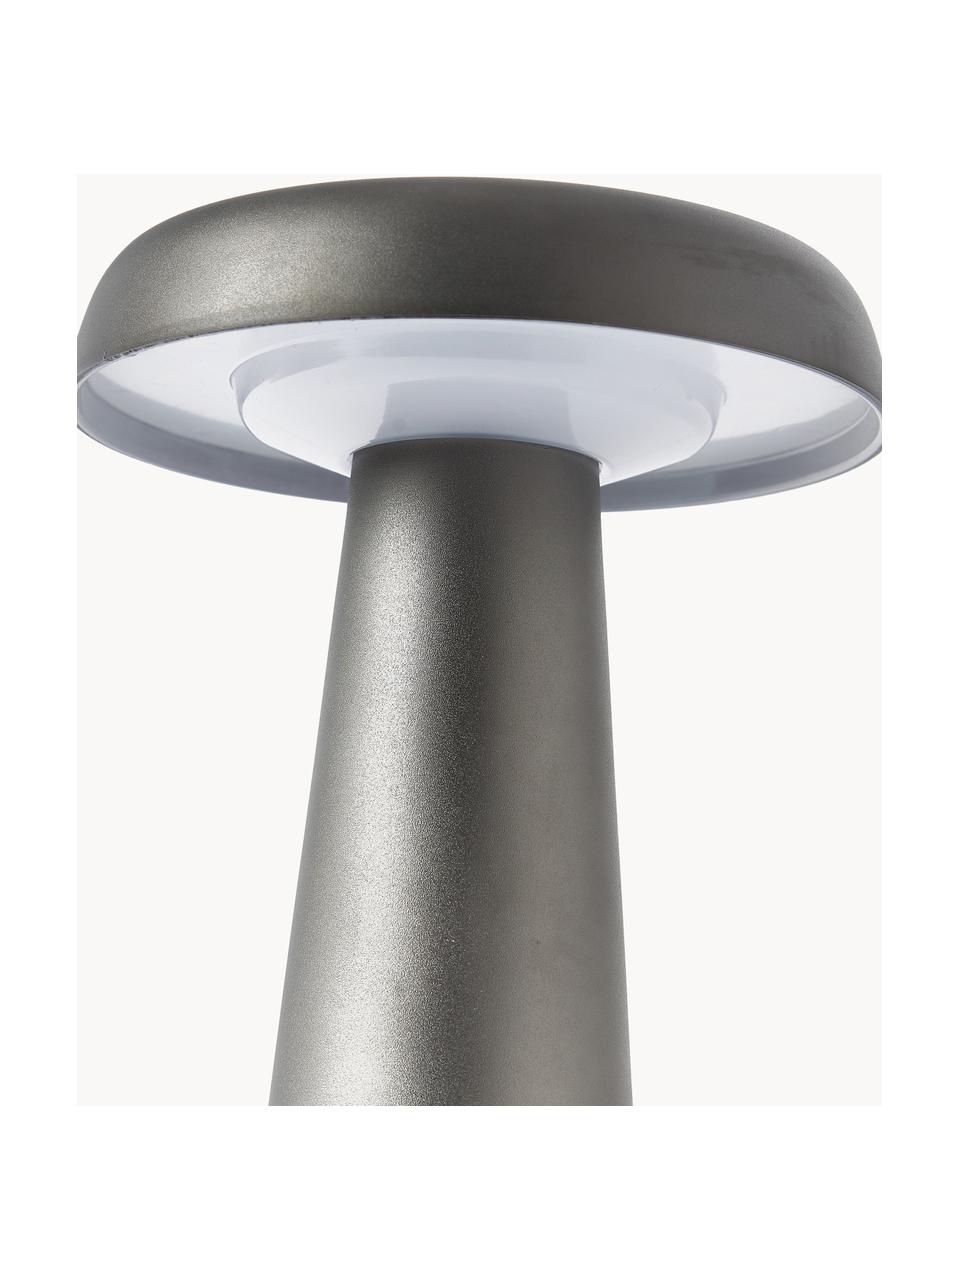 LED outdoor tafellamp Arcello, Metaal, geanodiseerd, Antraciet, Ø 14 x H 25 cm